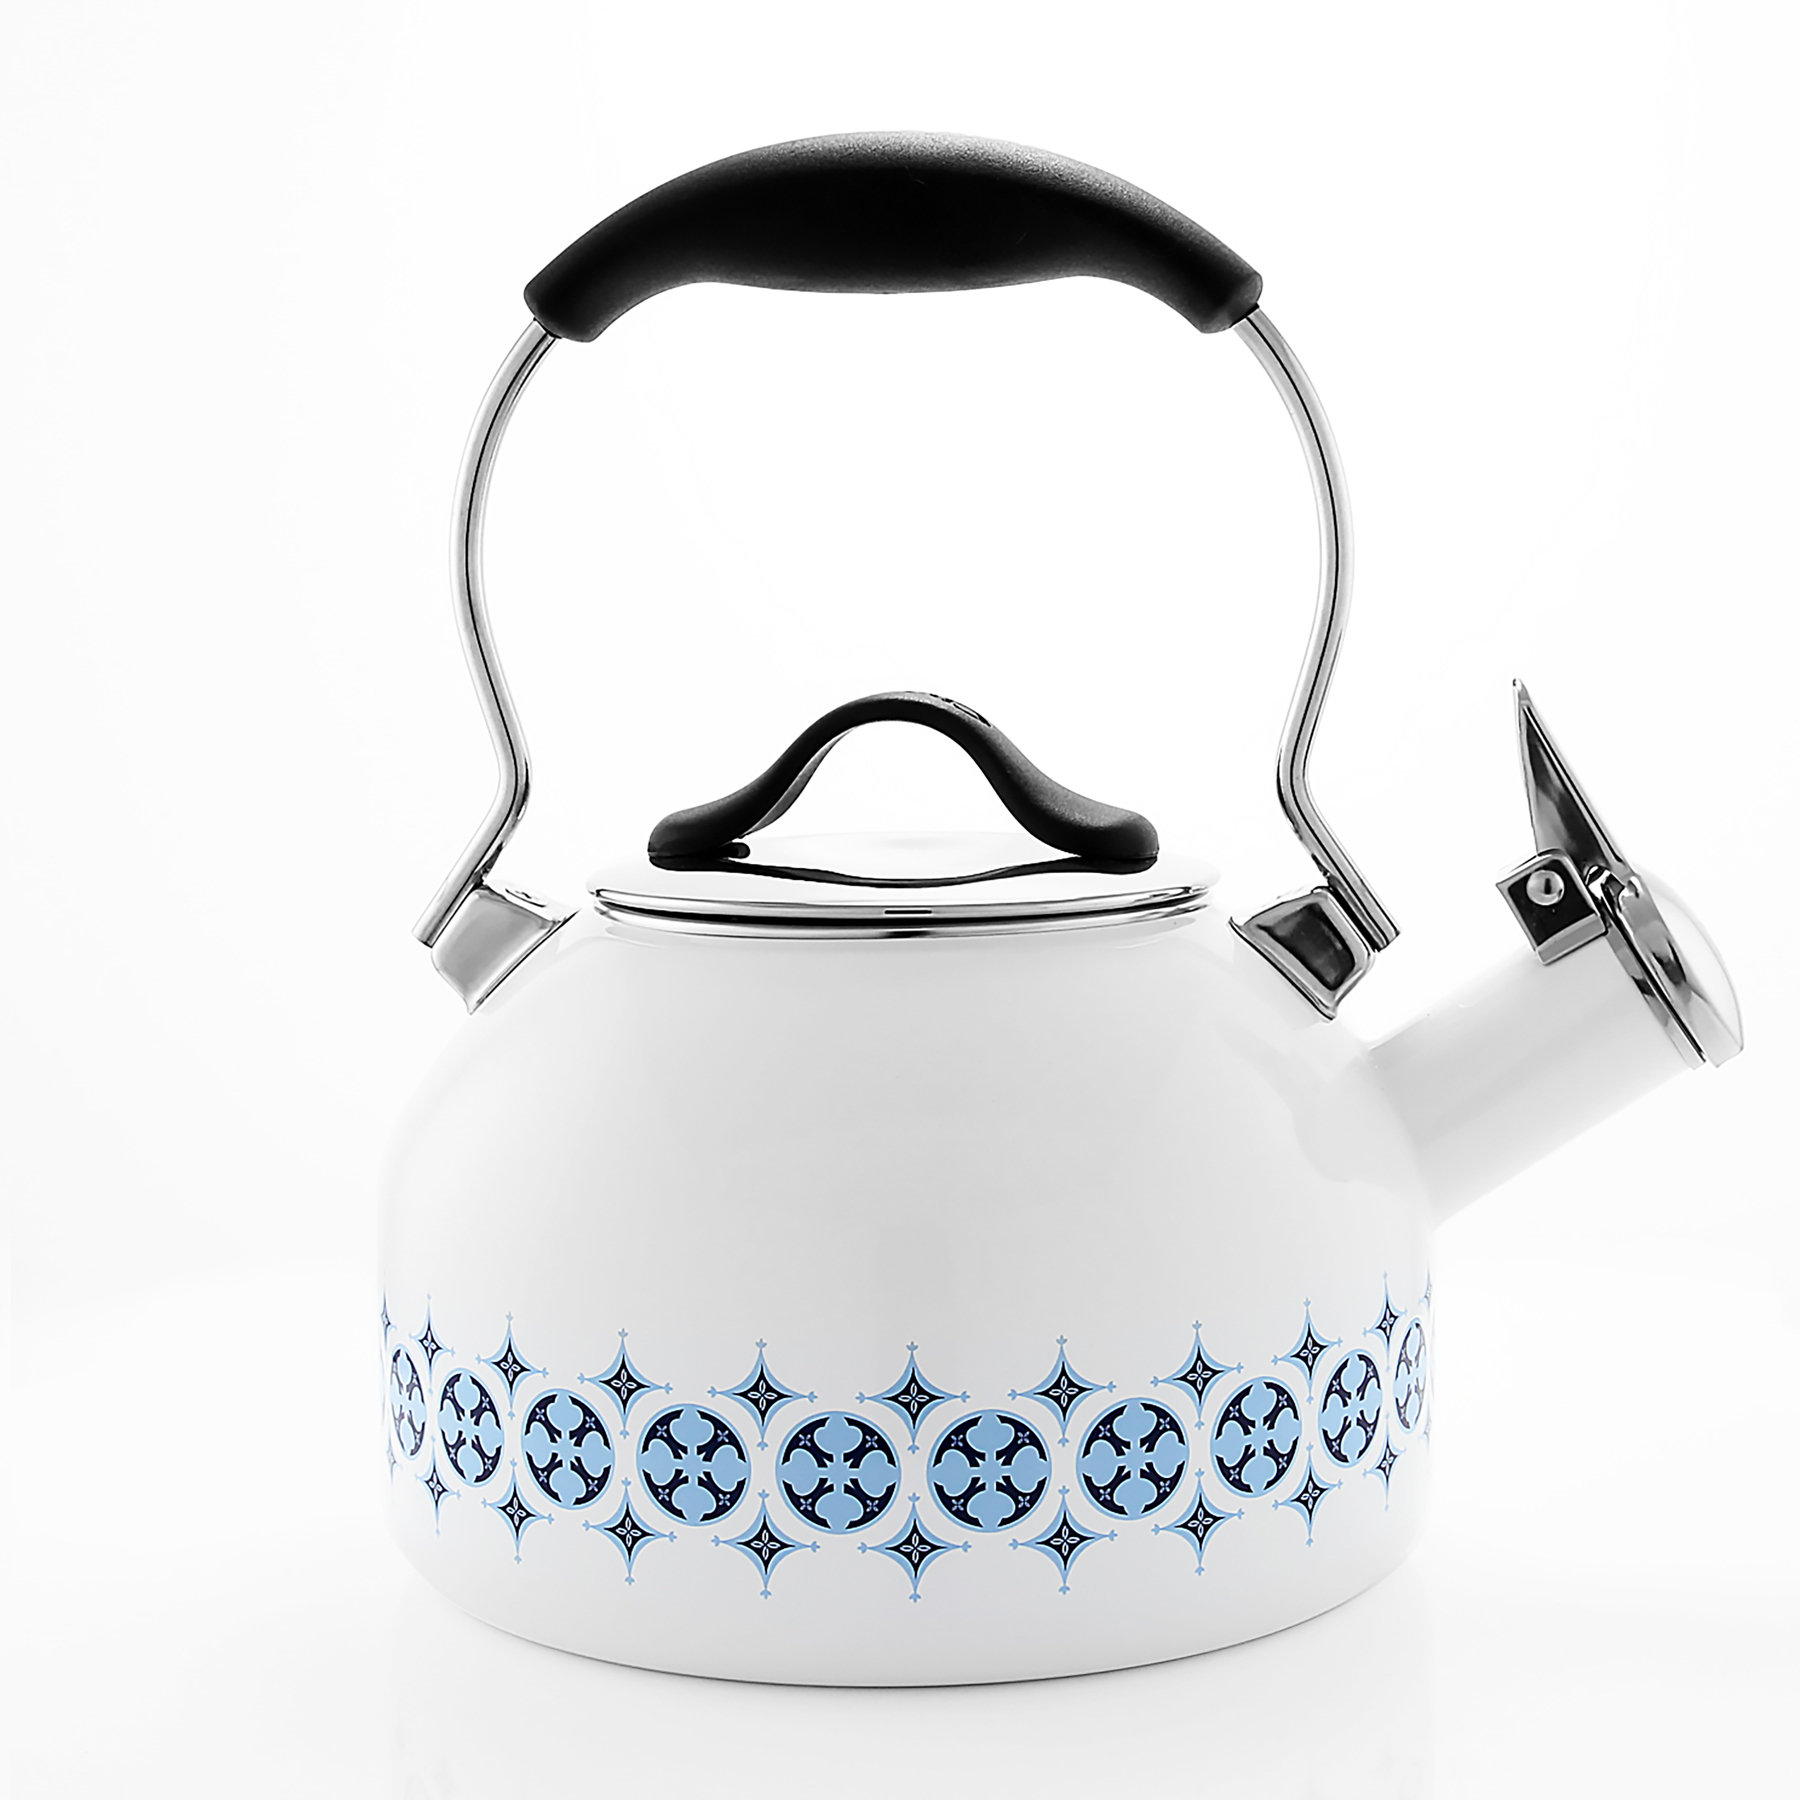 https://assets.wfcdn.com/im/30214664/compr-r85/2193/219327600/chantal-14-quarts-enamelware-whistling-stovetop-tea-kettle.jpg